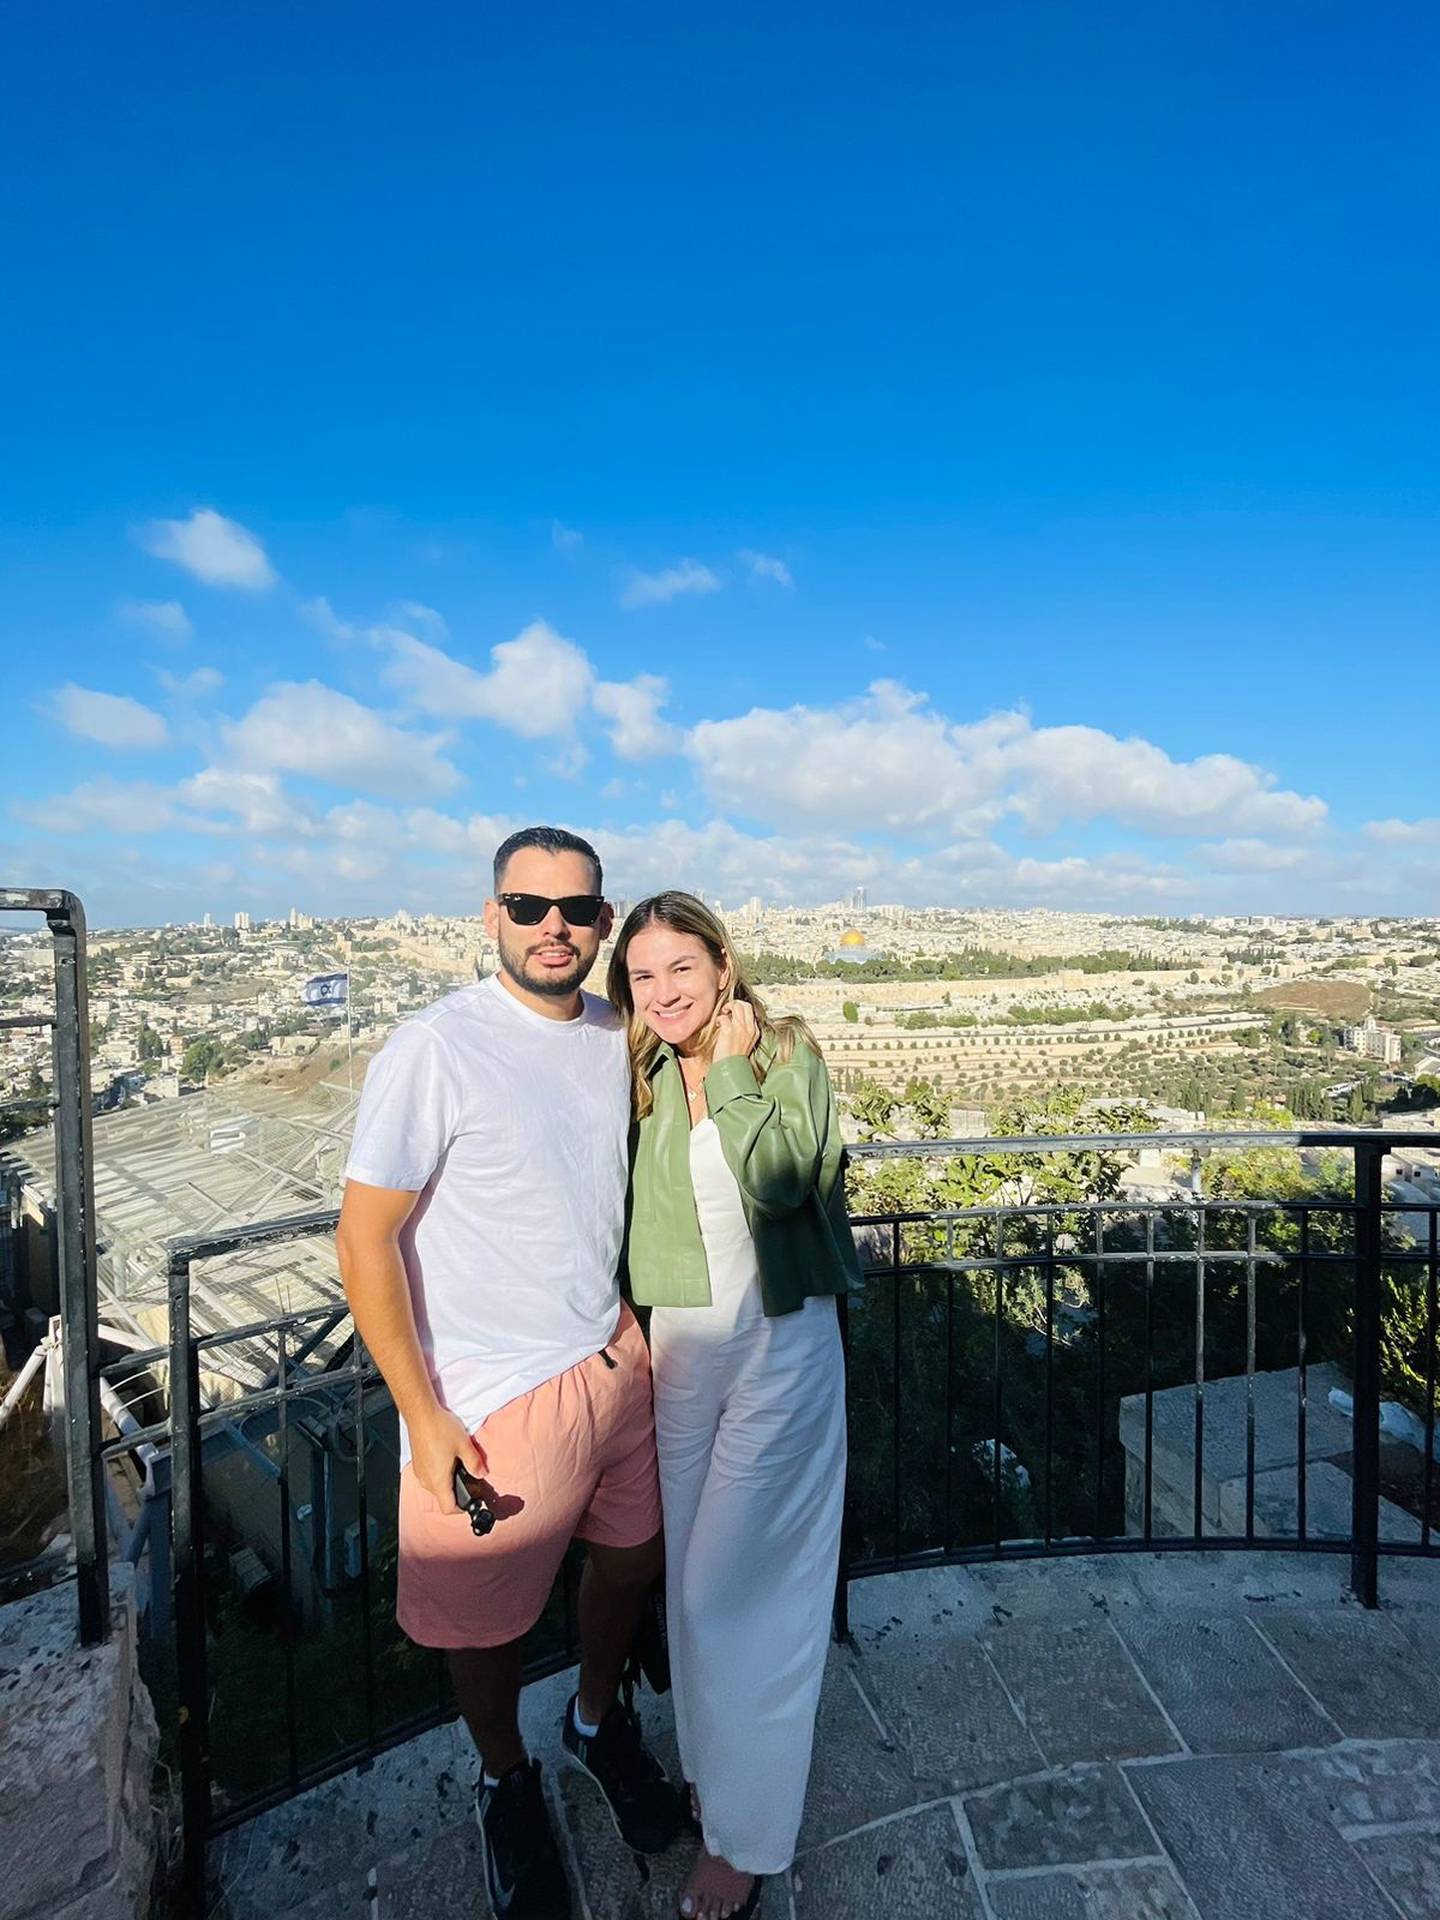 La costarricense Lauren Campos Salas, vecina de San Ramón y de 32 años, estaba el pasado 7 de octubre en Israel, justo en el Monte de los Olivos a las 10 de la mañana, cuando inició el bombardeo de Hamas.